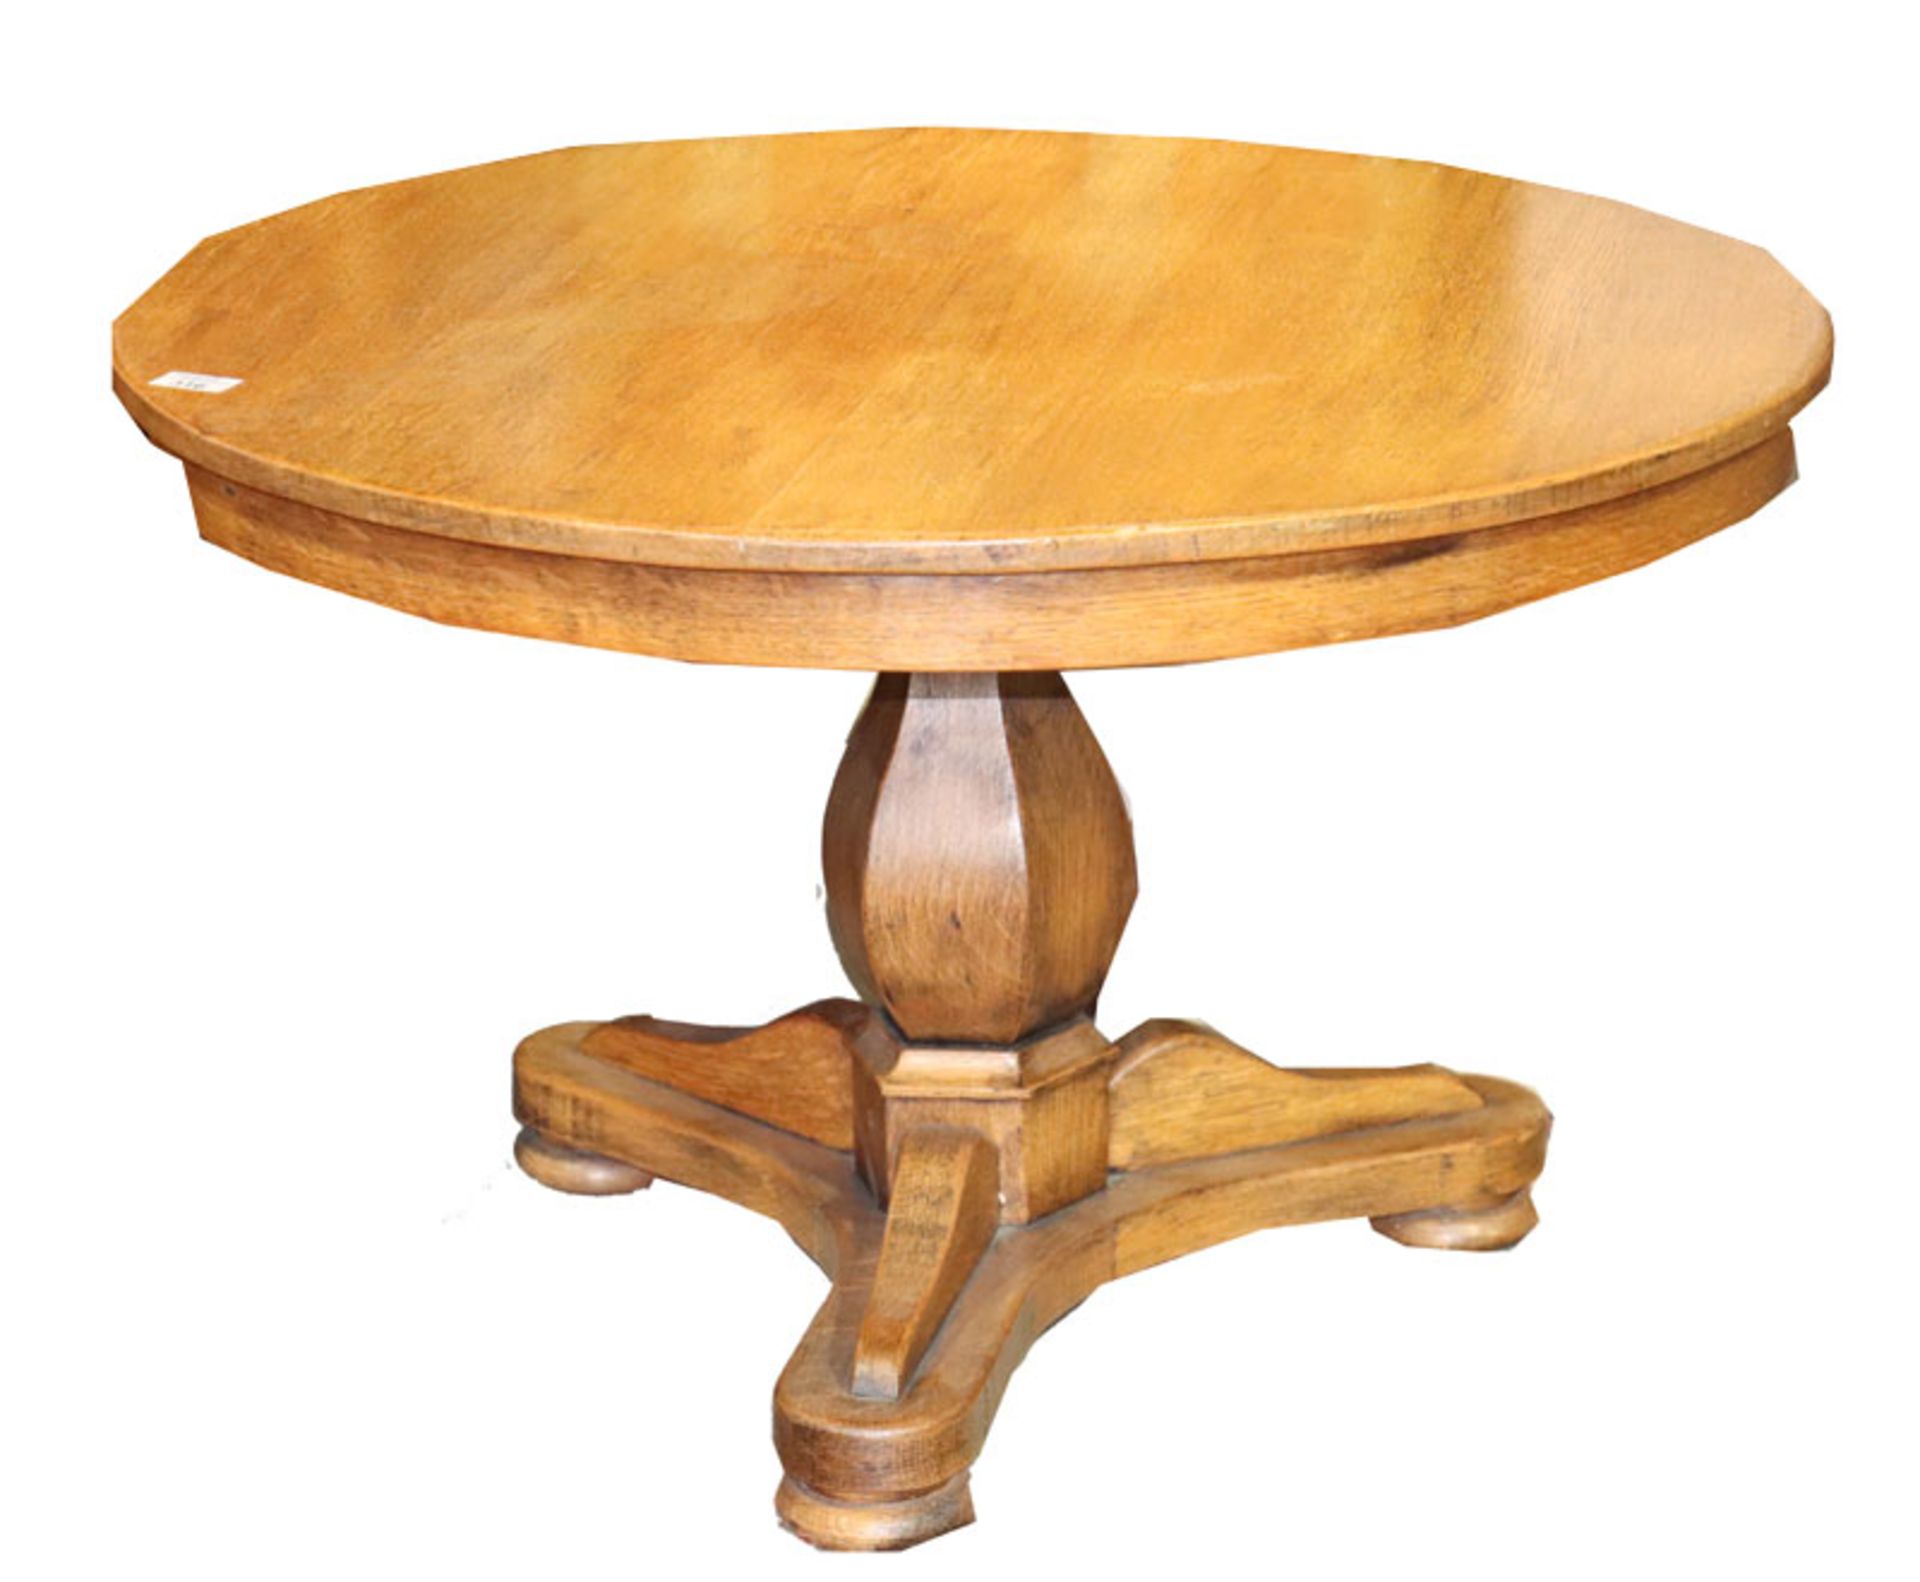 Tisch auf Mittelfuß mit 3 Beinen, rund, H 54 cm, D 84 cm, Gebrauchsspuren